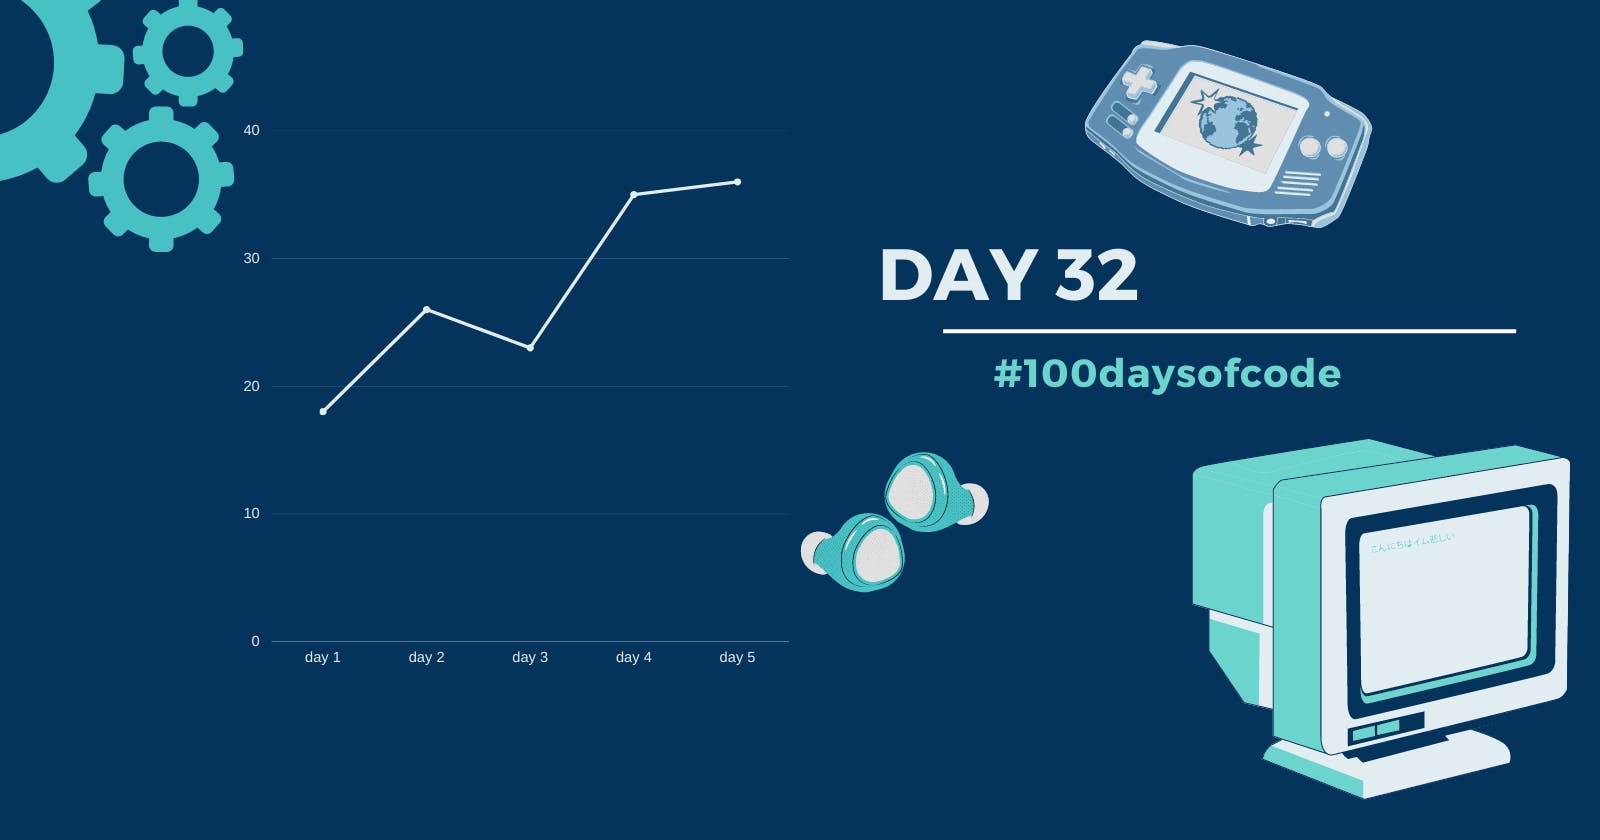 Day 32 in #100daysofcode challenge